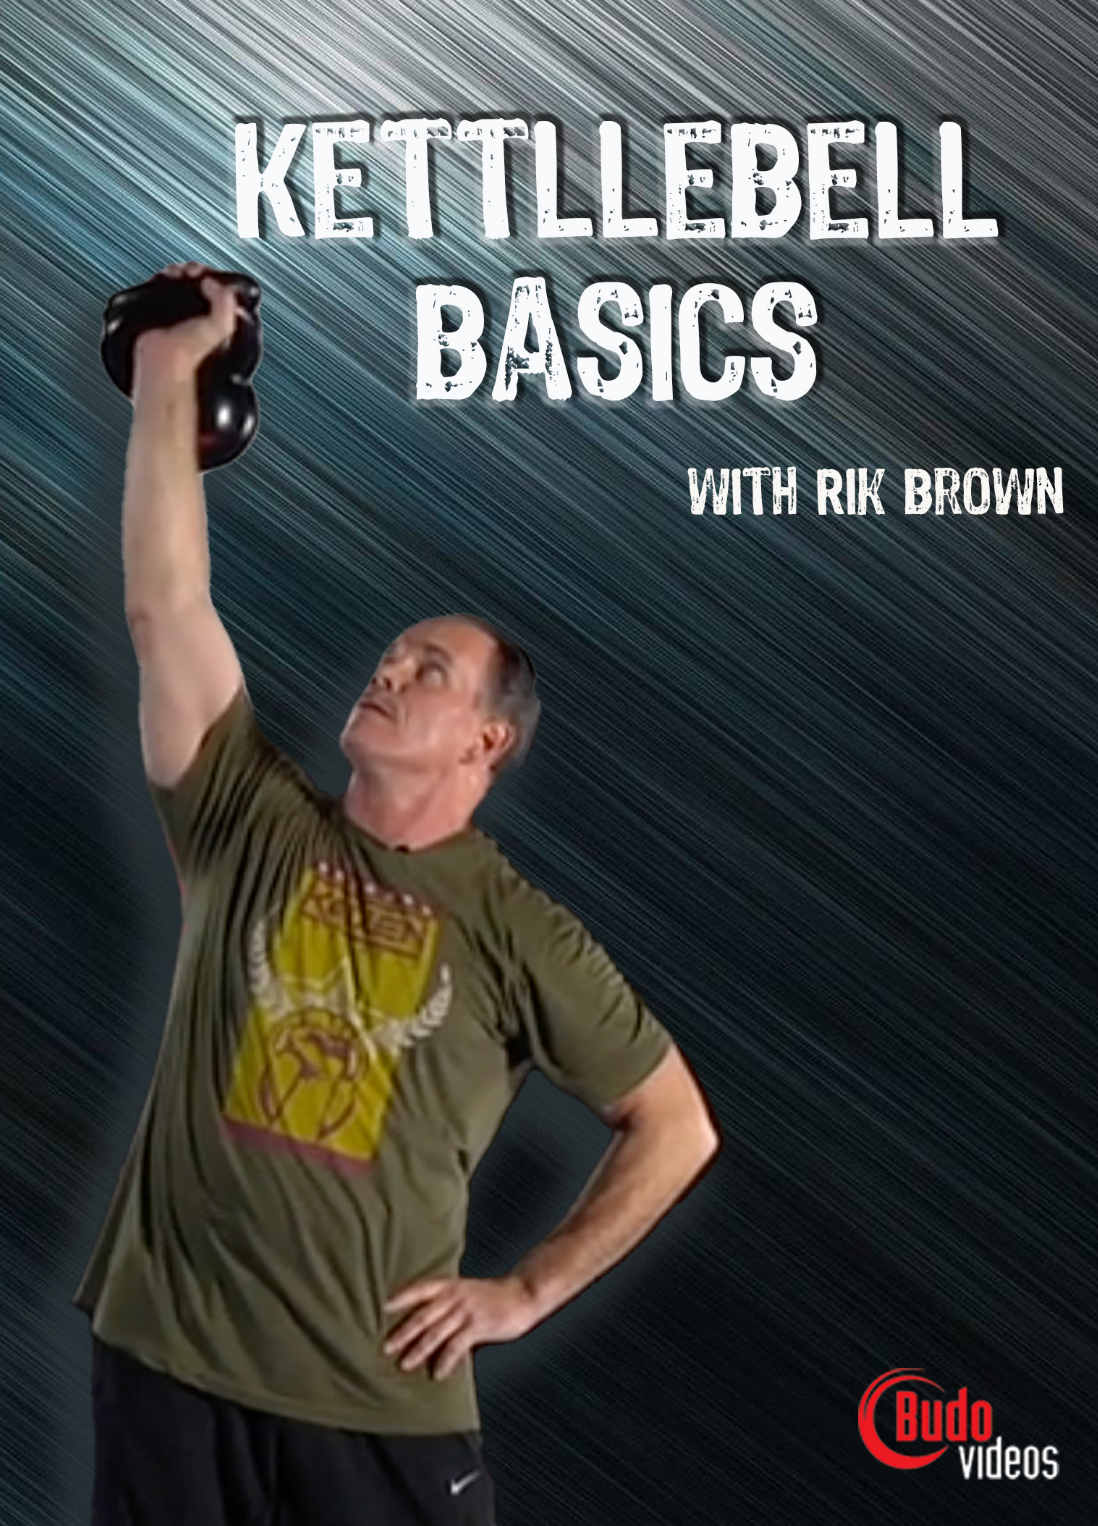 DVD de conceptos básicos de Kettllebell con Rik Brown